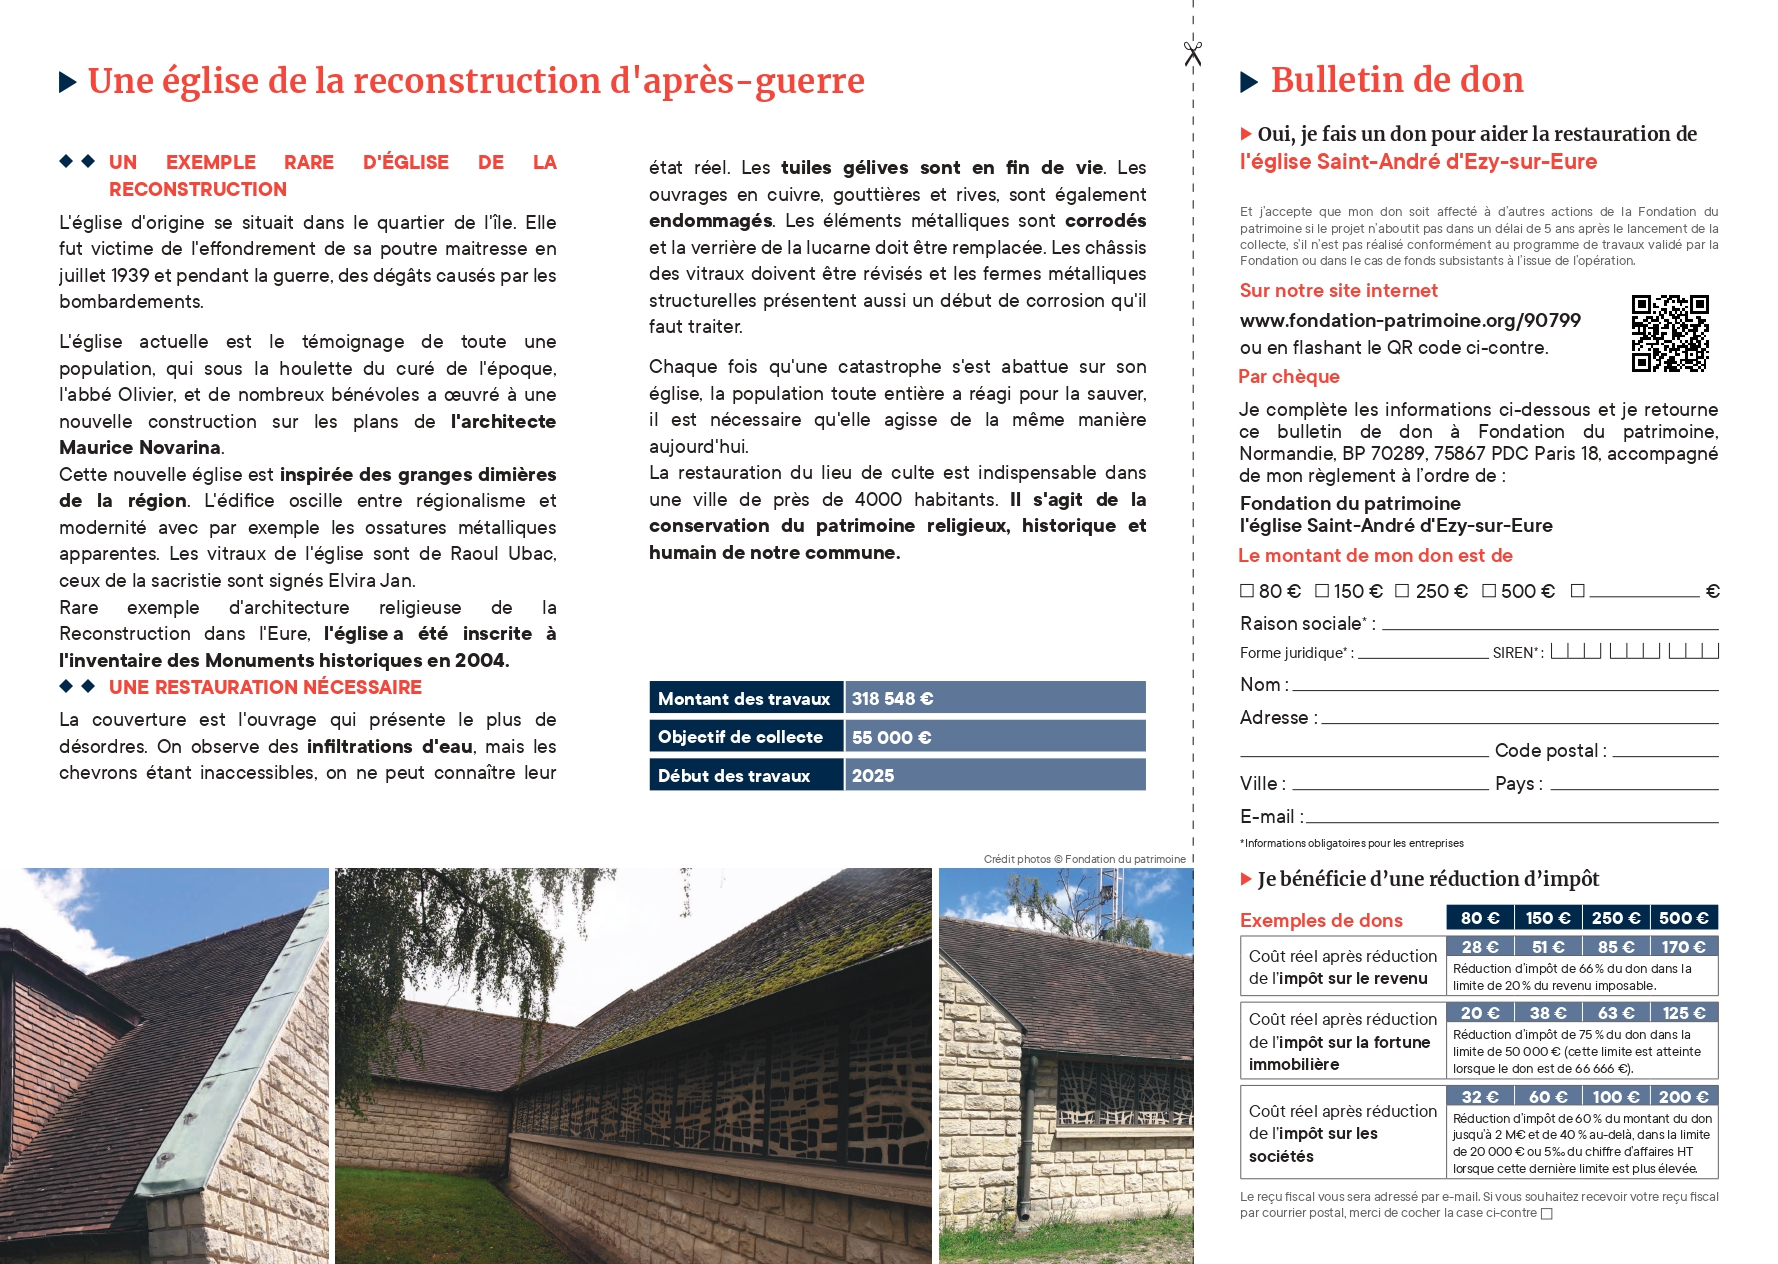 Bulletin de don - Ezy-sur-Eure - modifié_page-0002.jpg